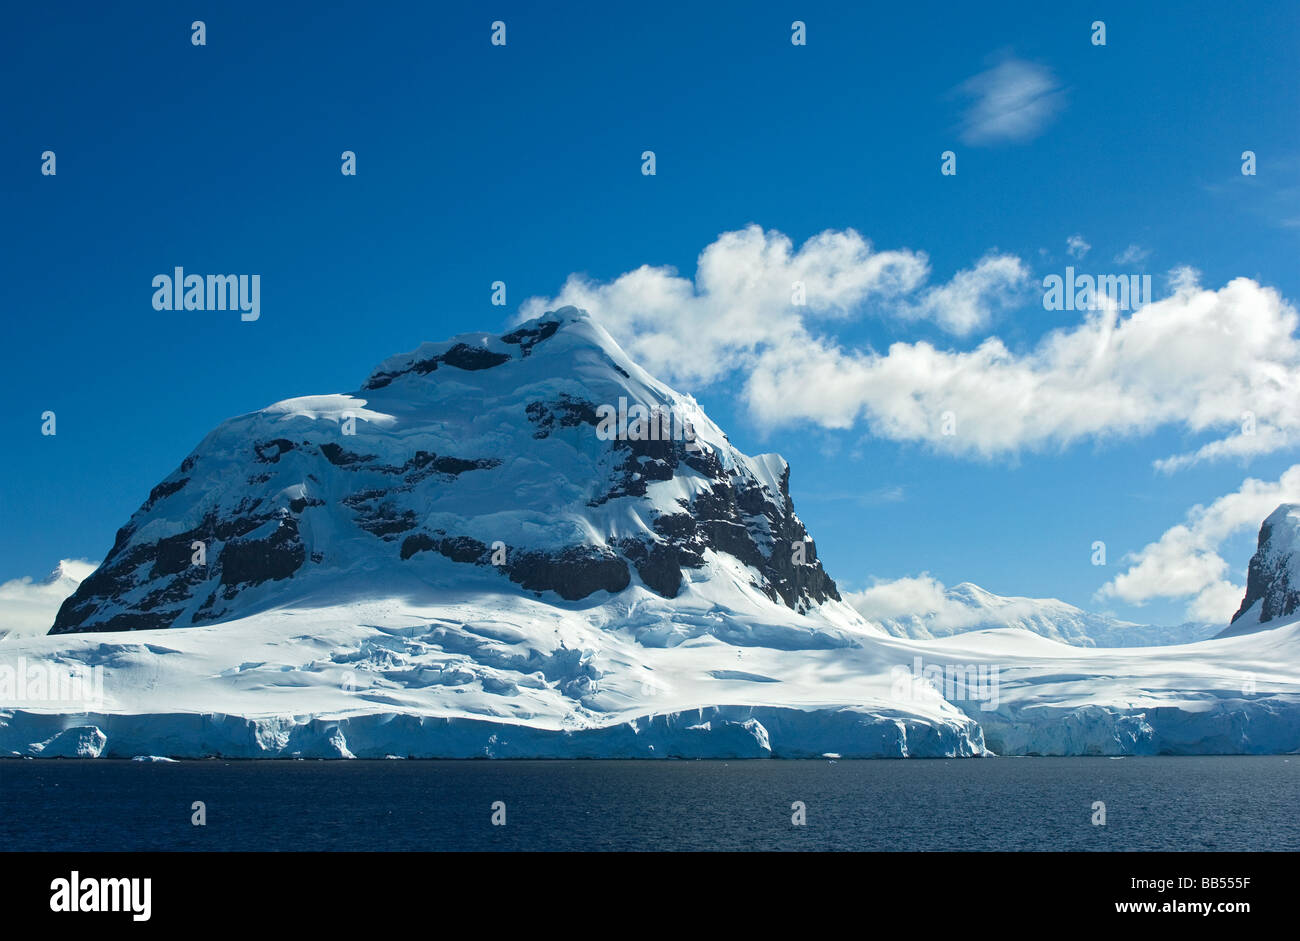 Spectacular Mountain Peak in Gerlache Strait, Antarctic Peninsula ...